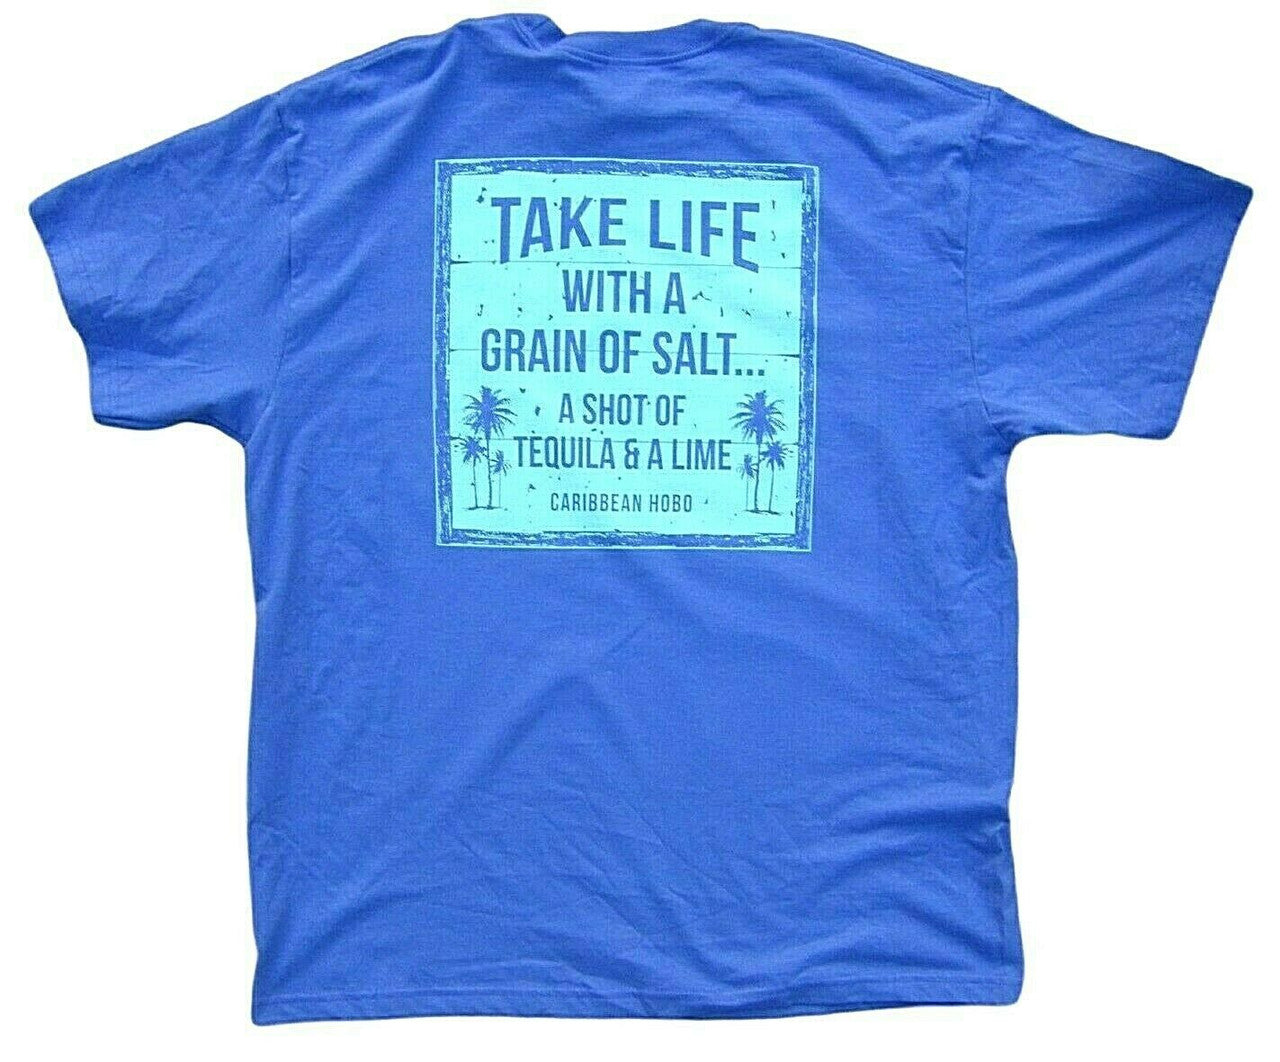 Grain of Salt t-shirt.